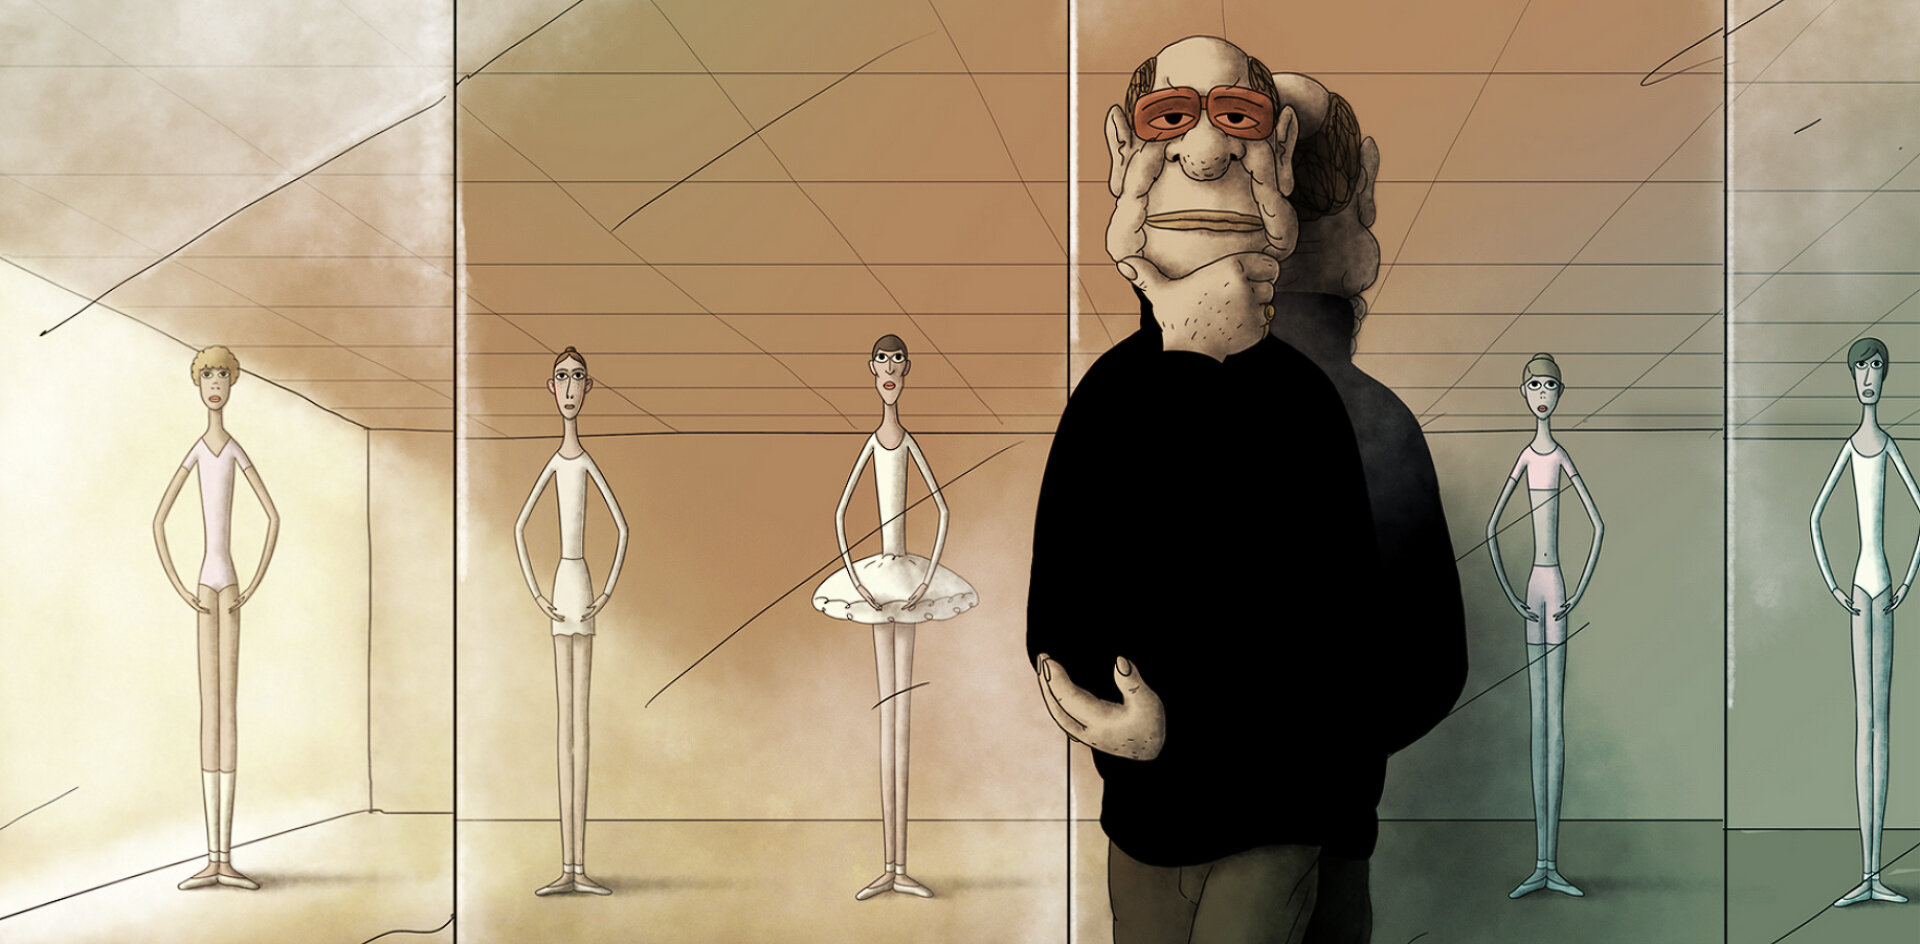 Мультфильм петербургской студии о судьбе людей на сломе эпох номинирован на «Оскар»